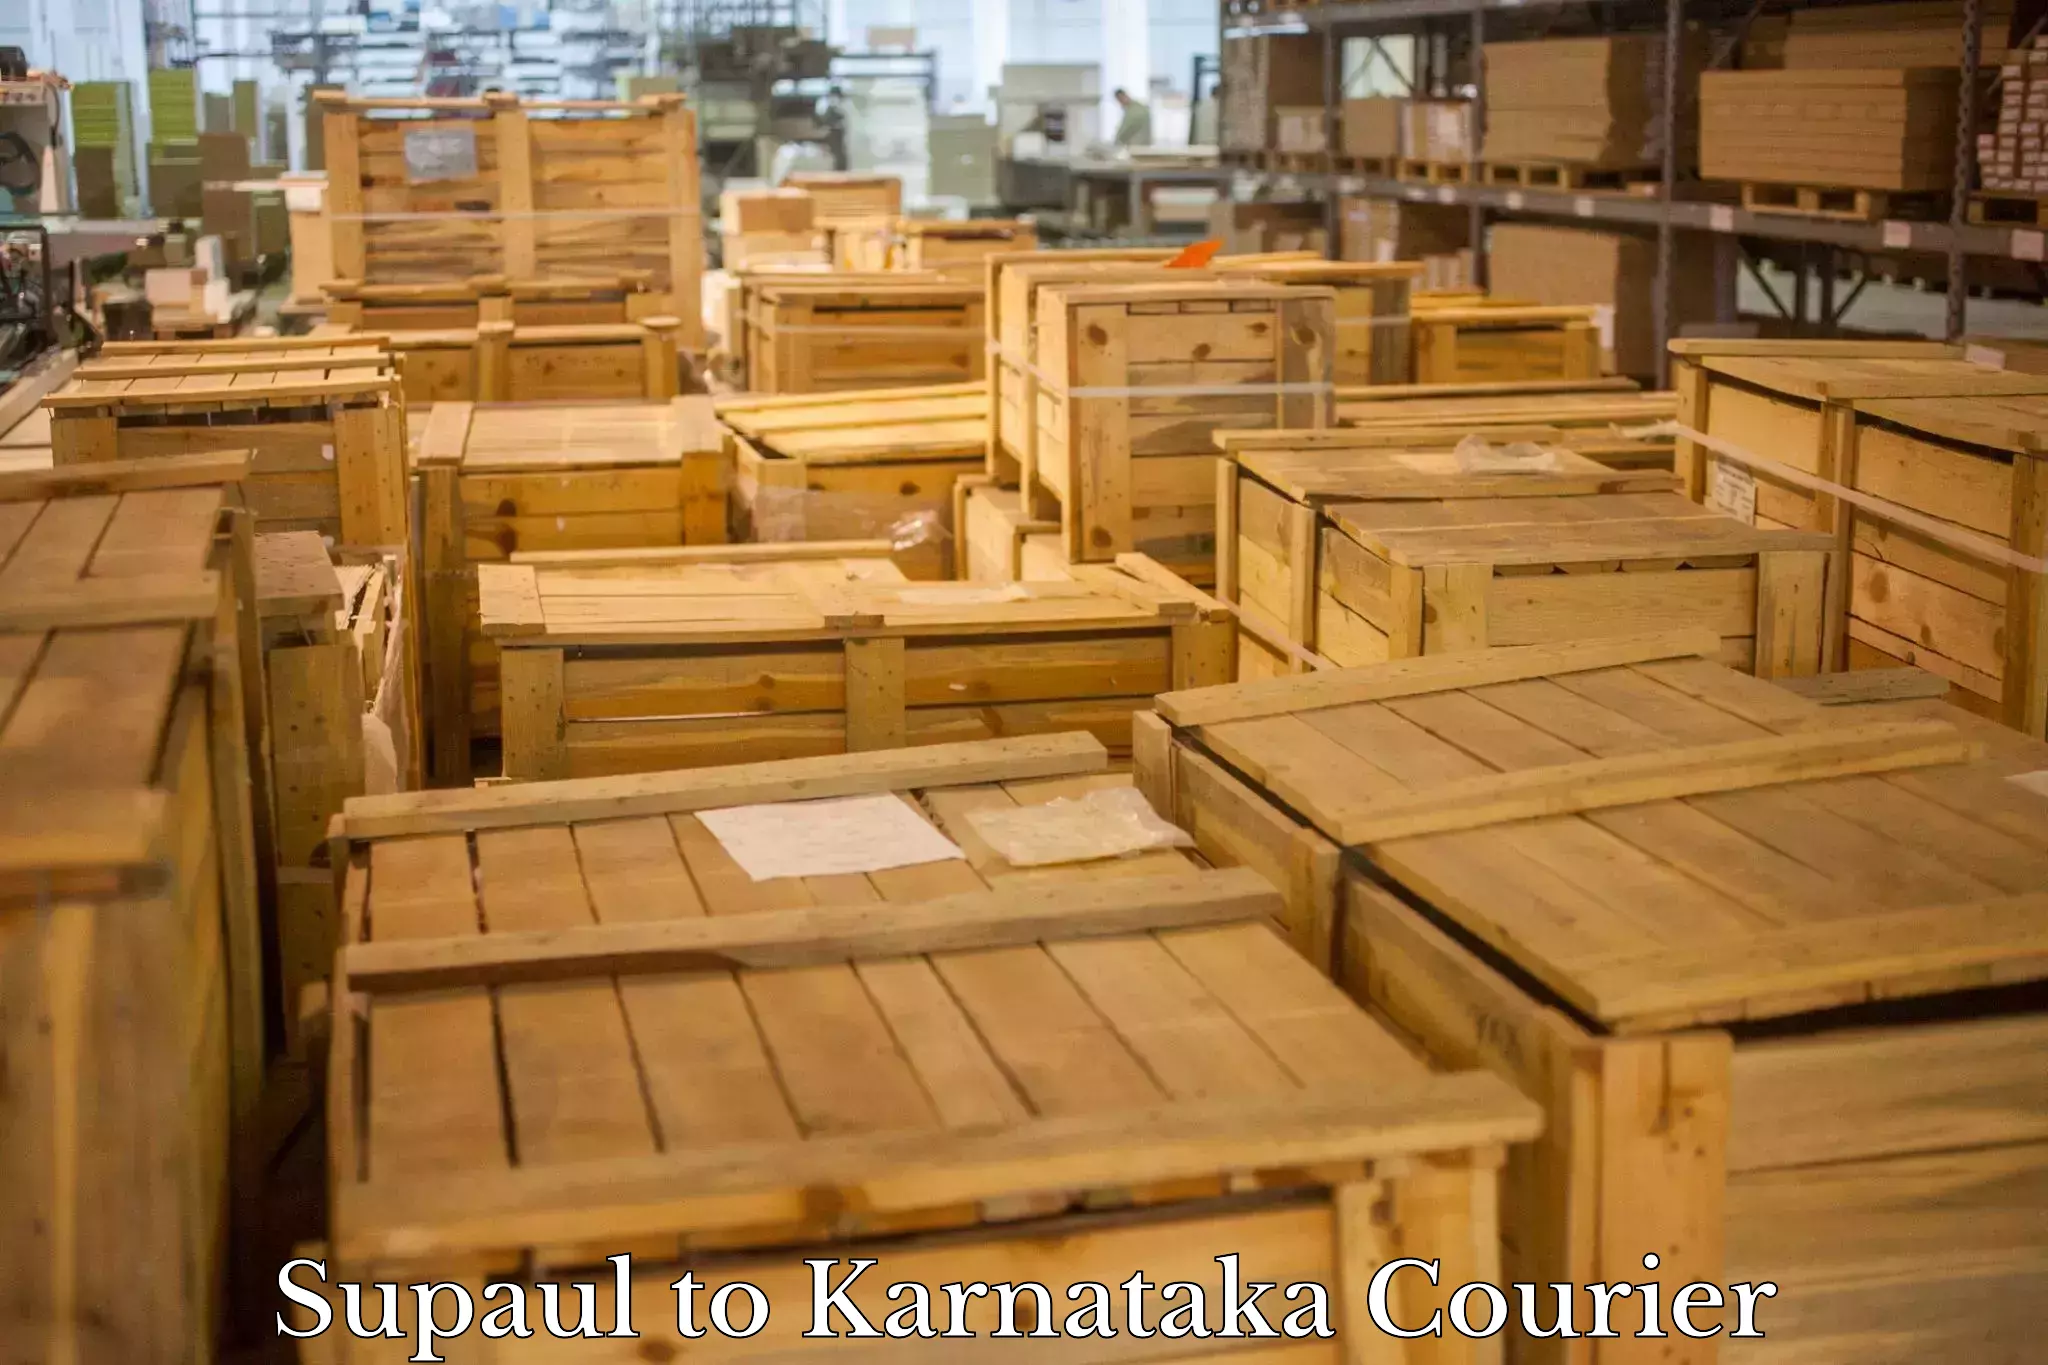 Nationwide shipping capabilities Supaul to Karnataka